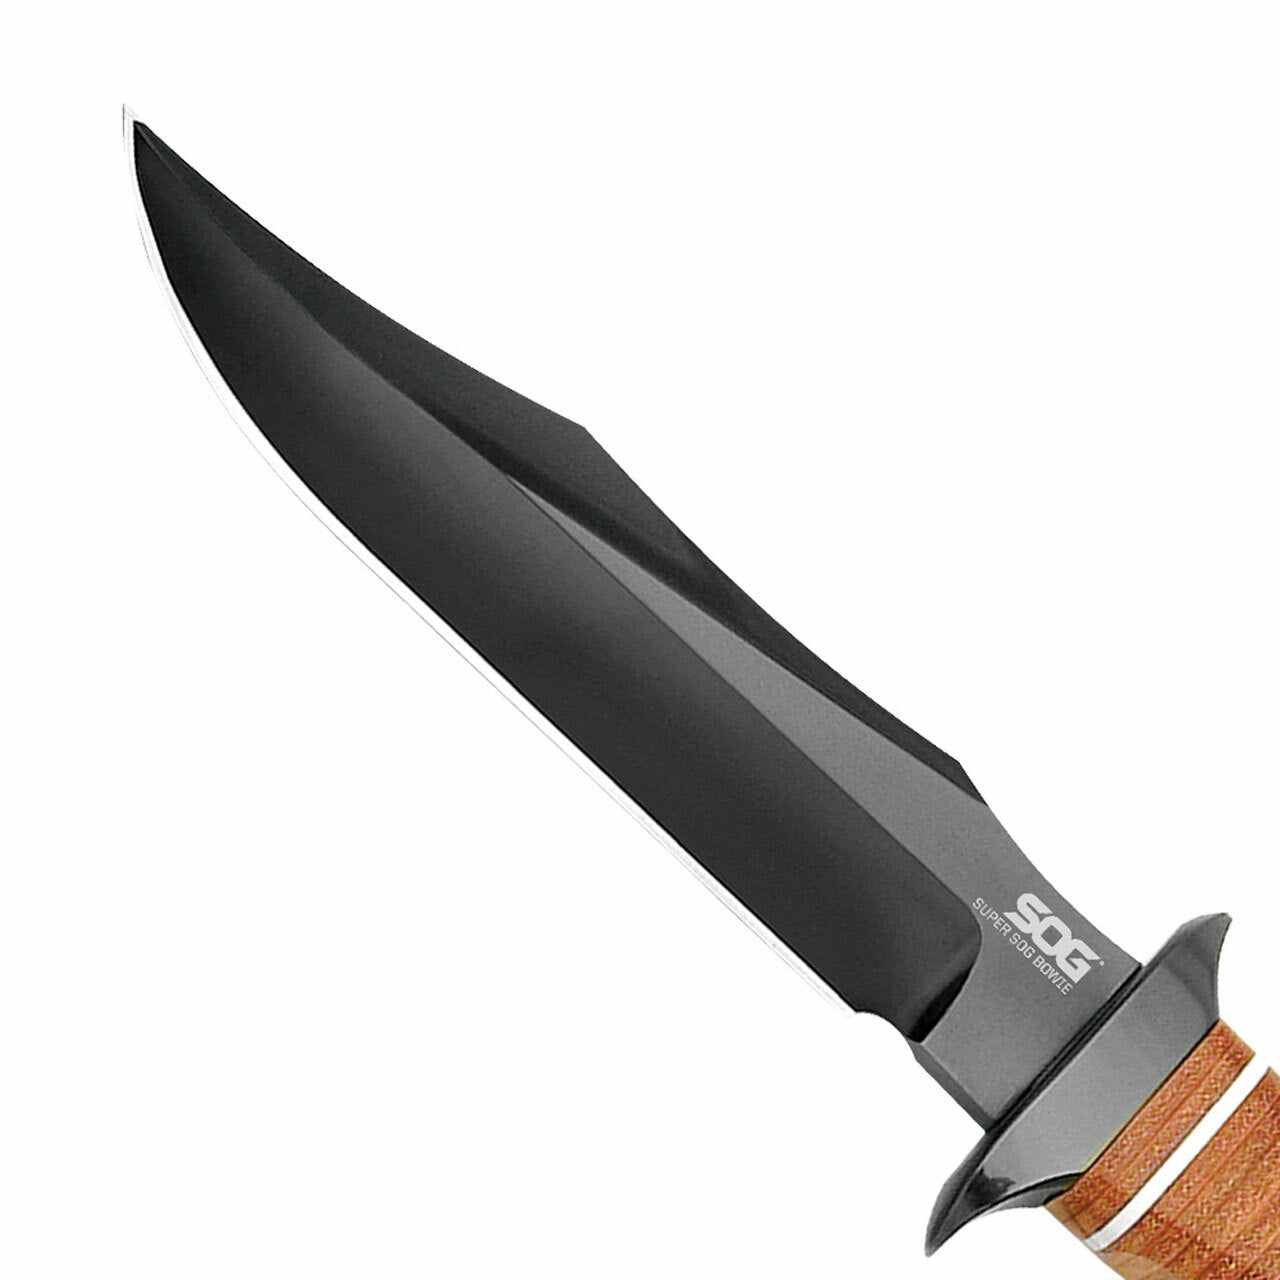 Super SOG Bowie knife